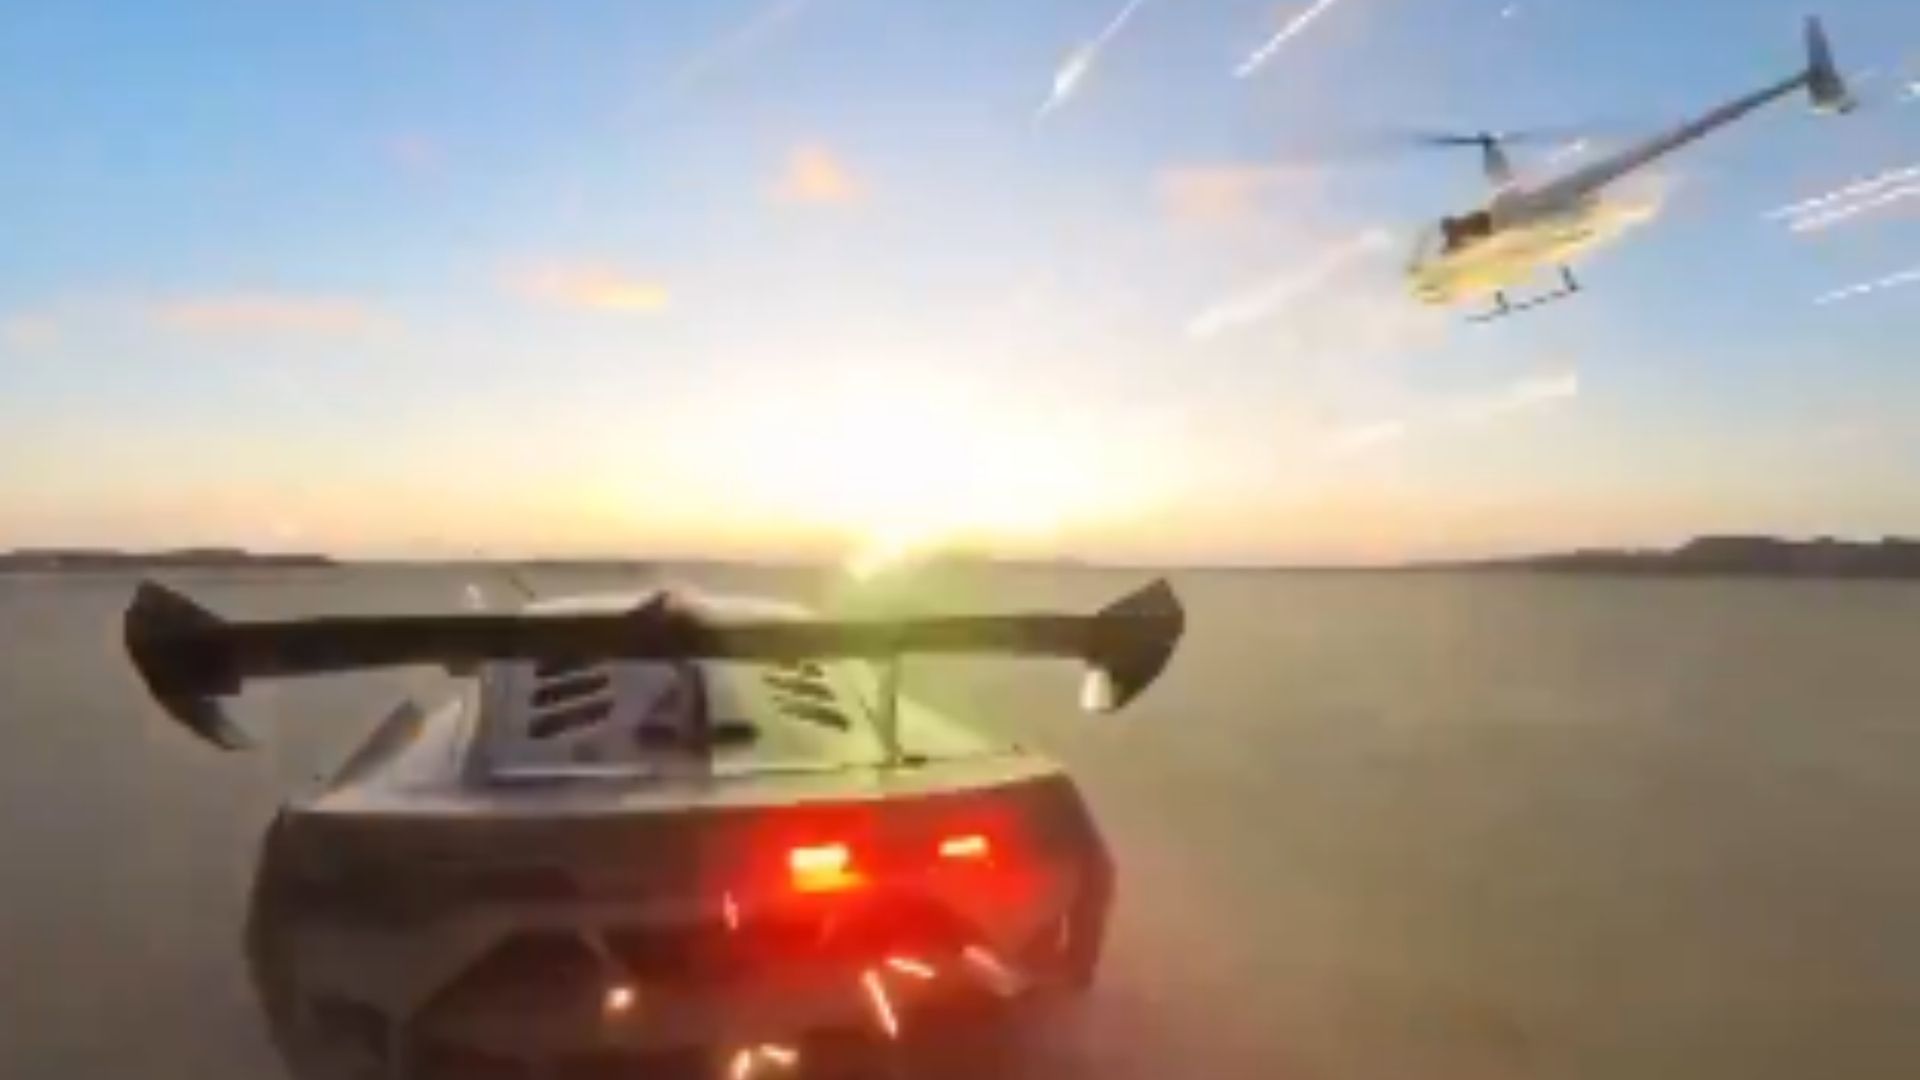 Alex Choi filmó a dos mujeres disparando fuegos artificiales desde un helicóptero en el aire contra un Lamborghini 